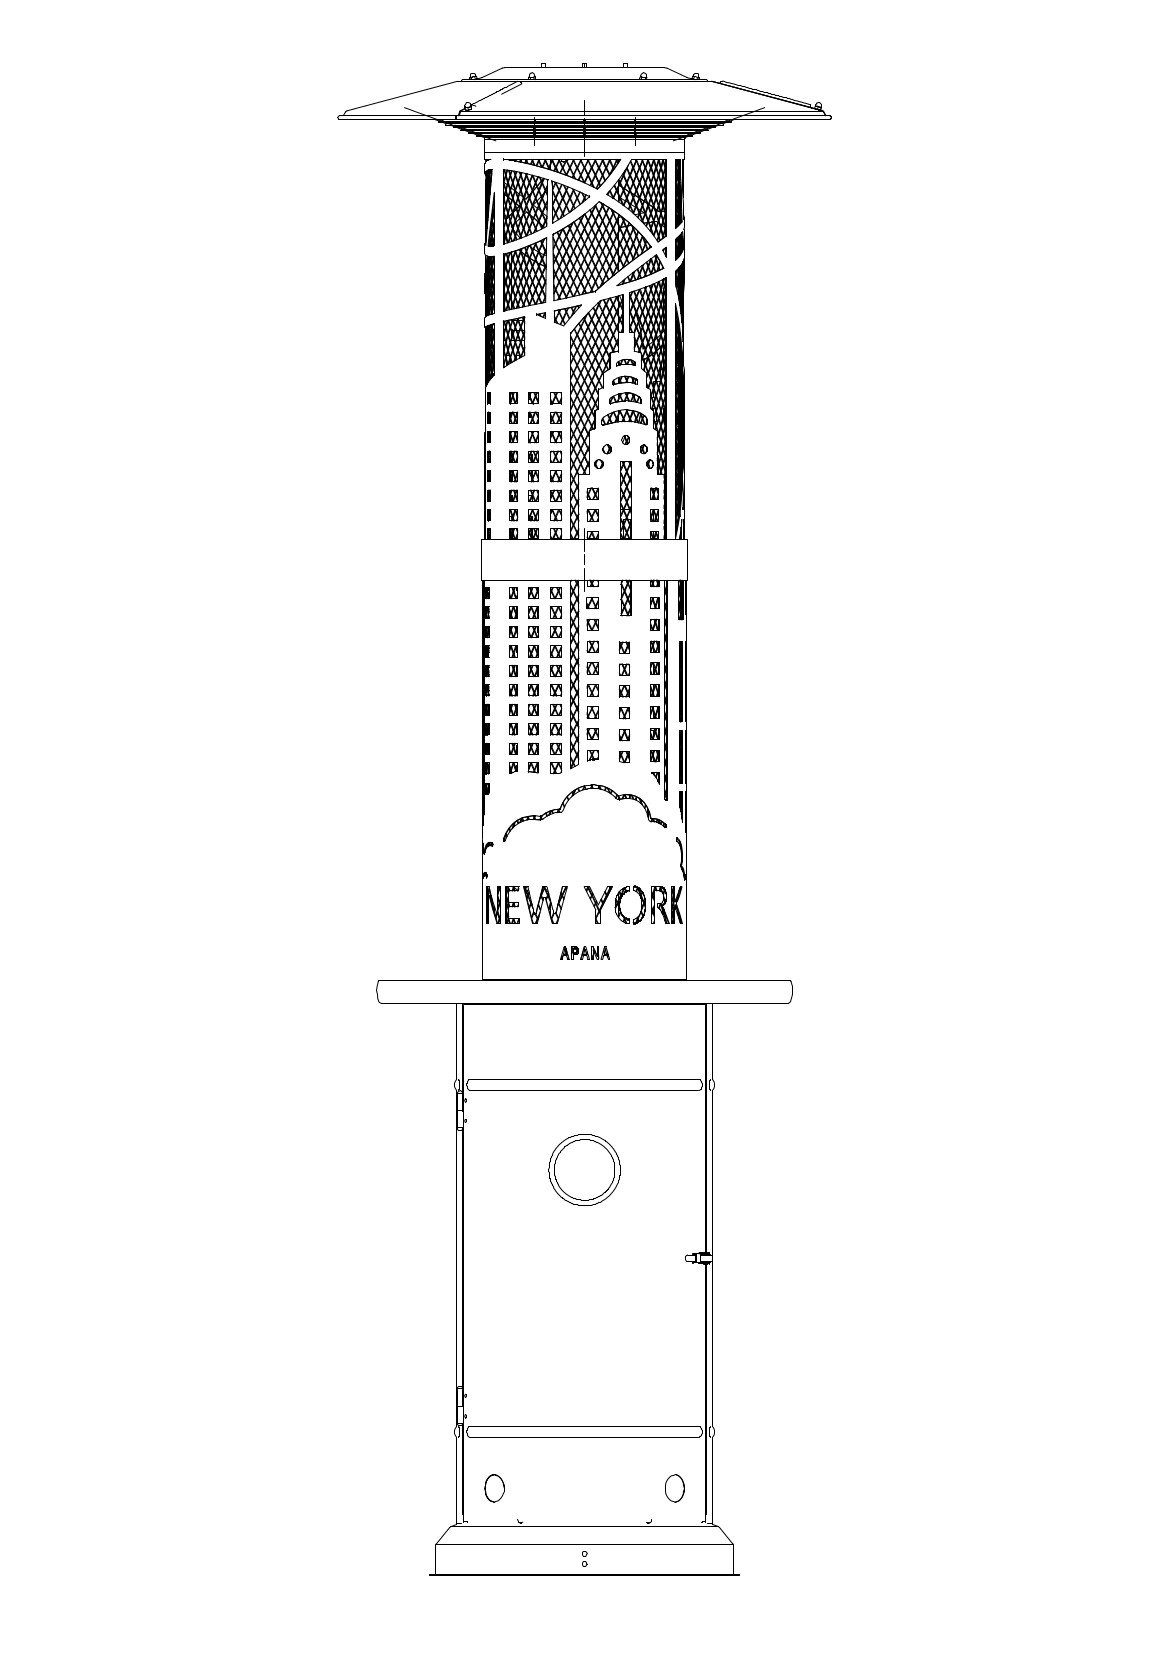 Modell:New / York Optik New York DESIGN, 11520 Heizstrahler W, APANA Modell:Leaf